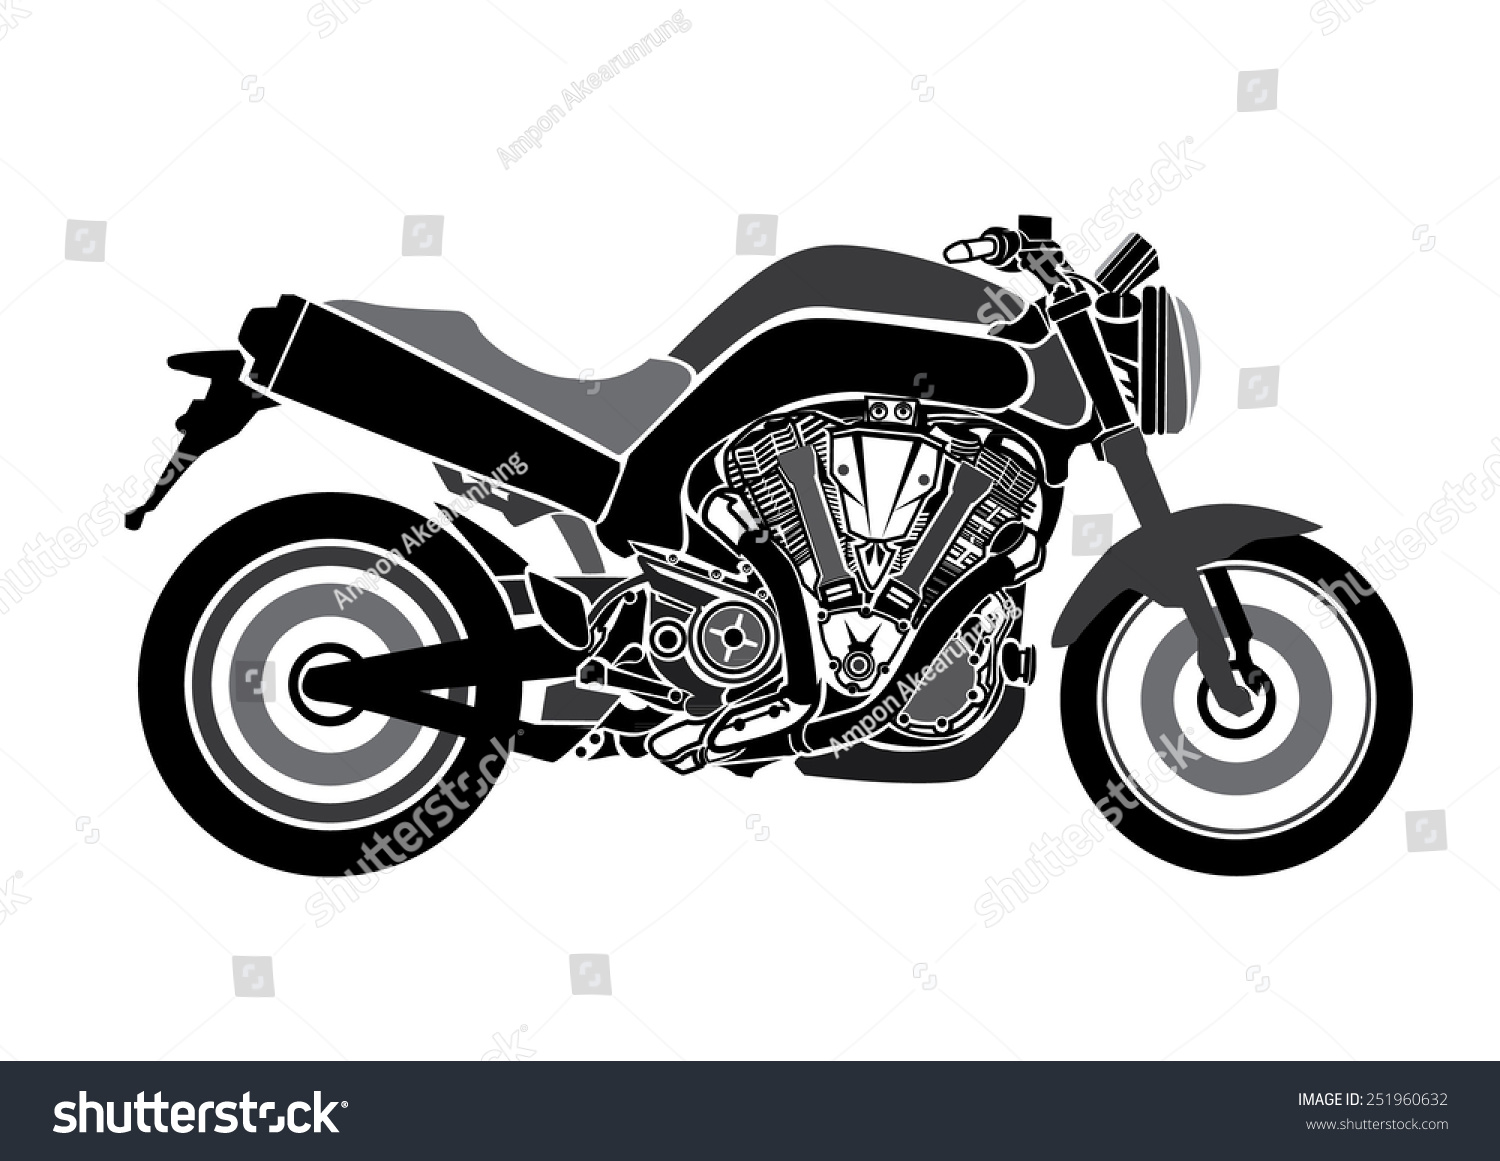 Motorcycle Vector Stock Vector 251960632 Shutterstock